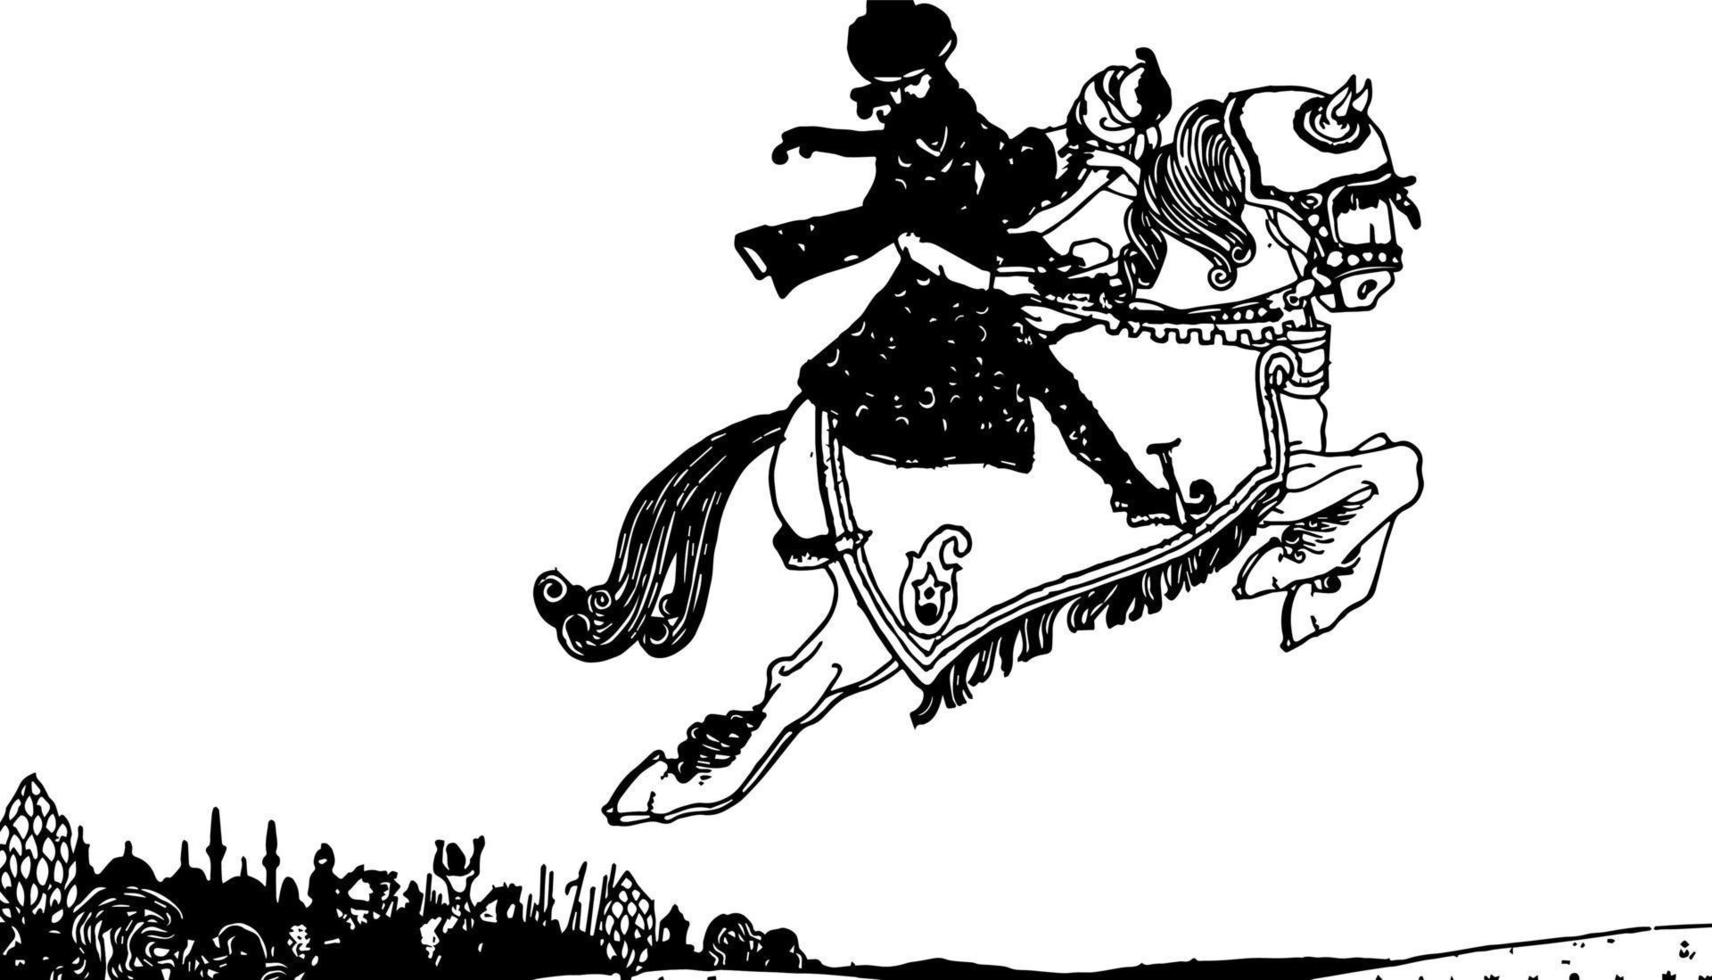 le cheval magique, illustration vintage vecteur